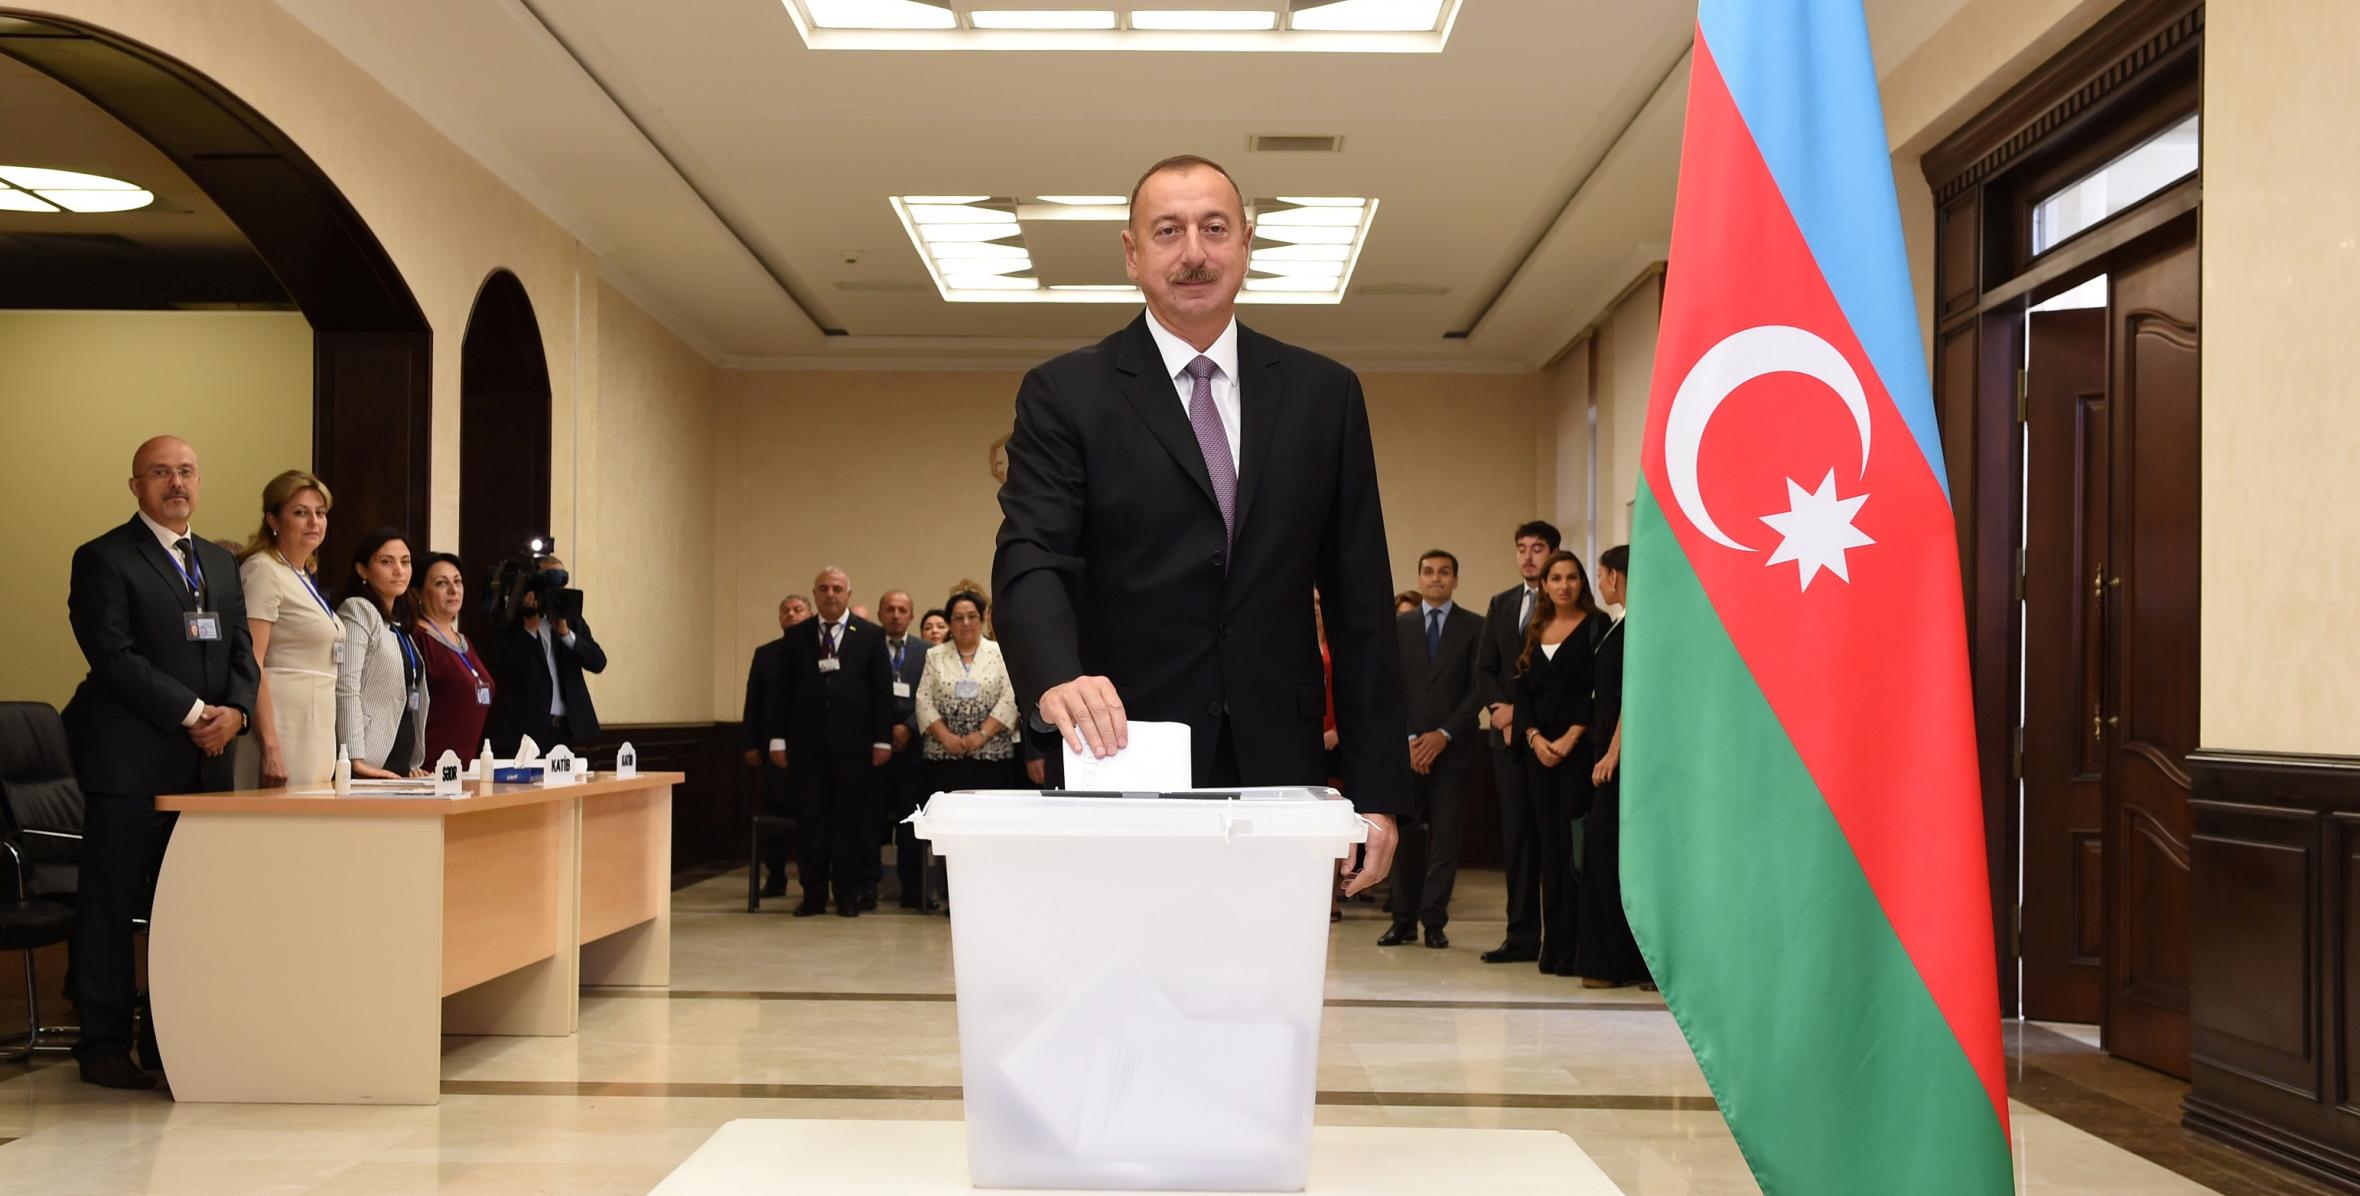 Ильхам Алиев проголосовал на избирательном участке номер 6 в Баку